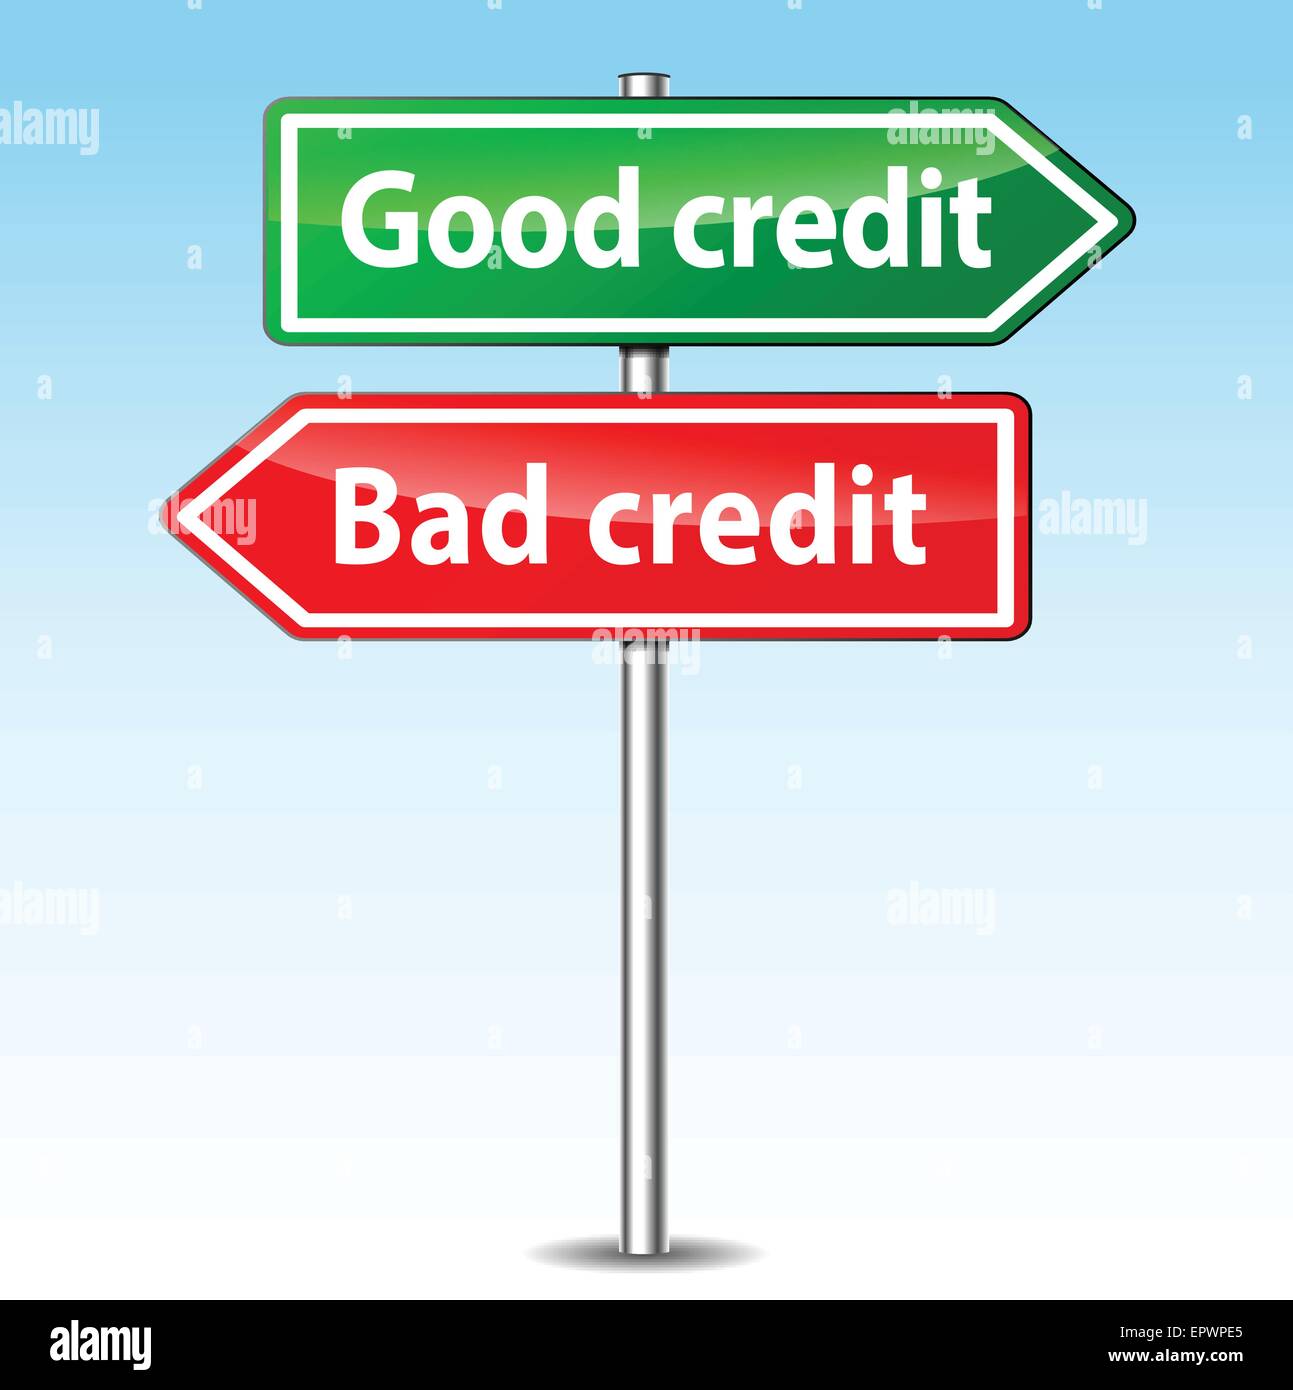 Ilustración de buenas y malas direcciones de crédito Ilustración del Vector